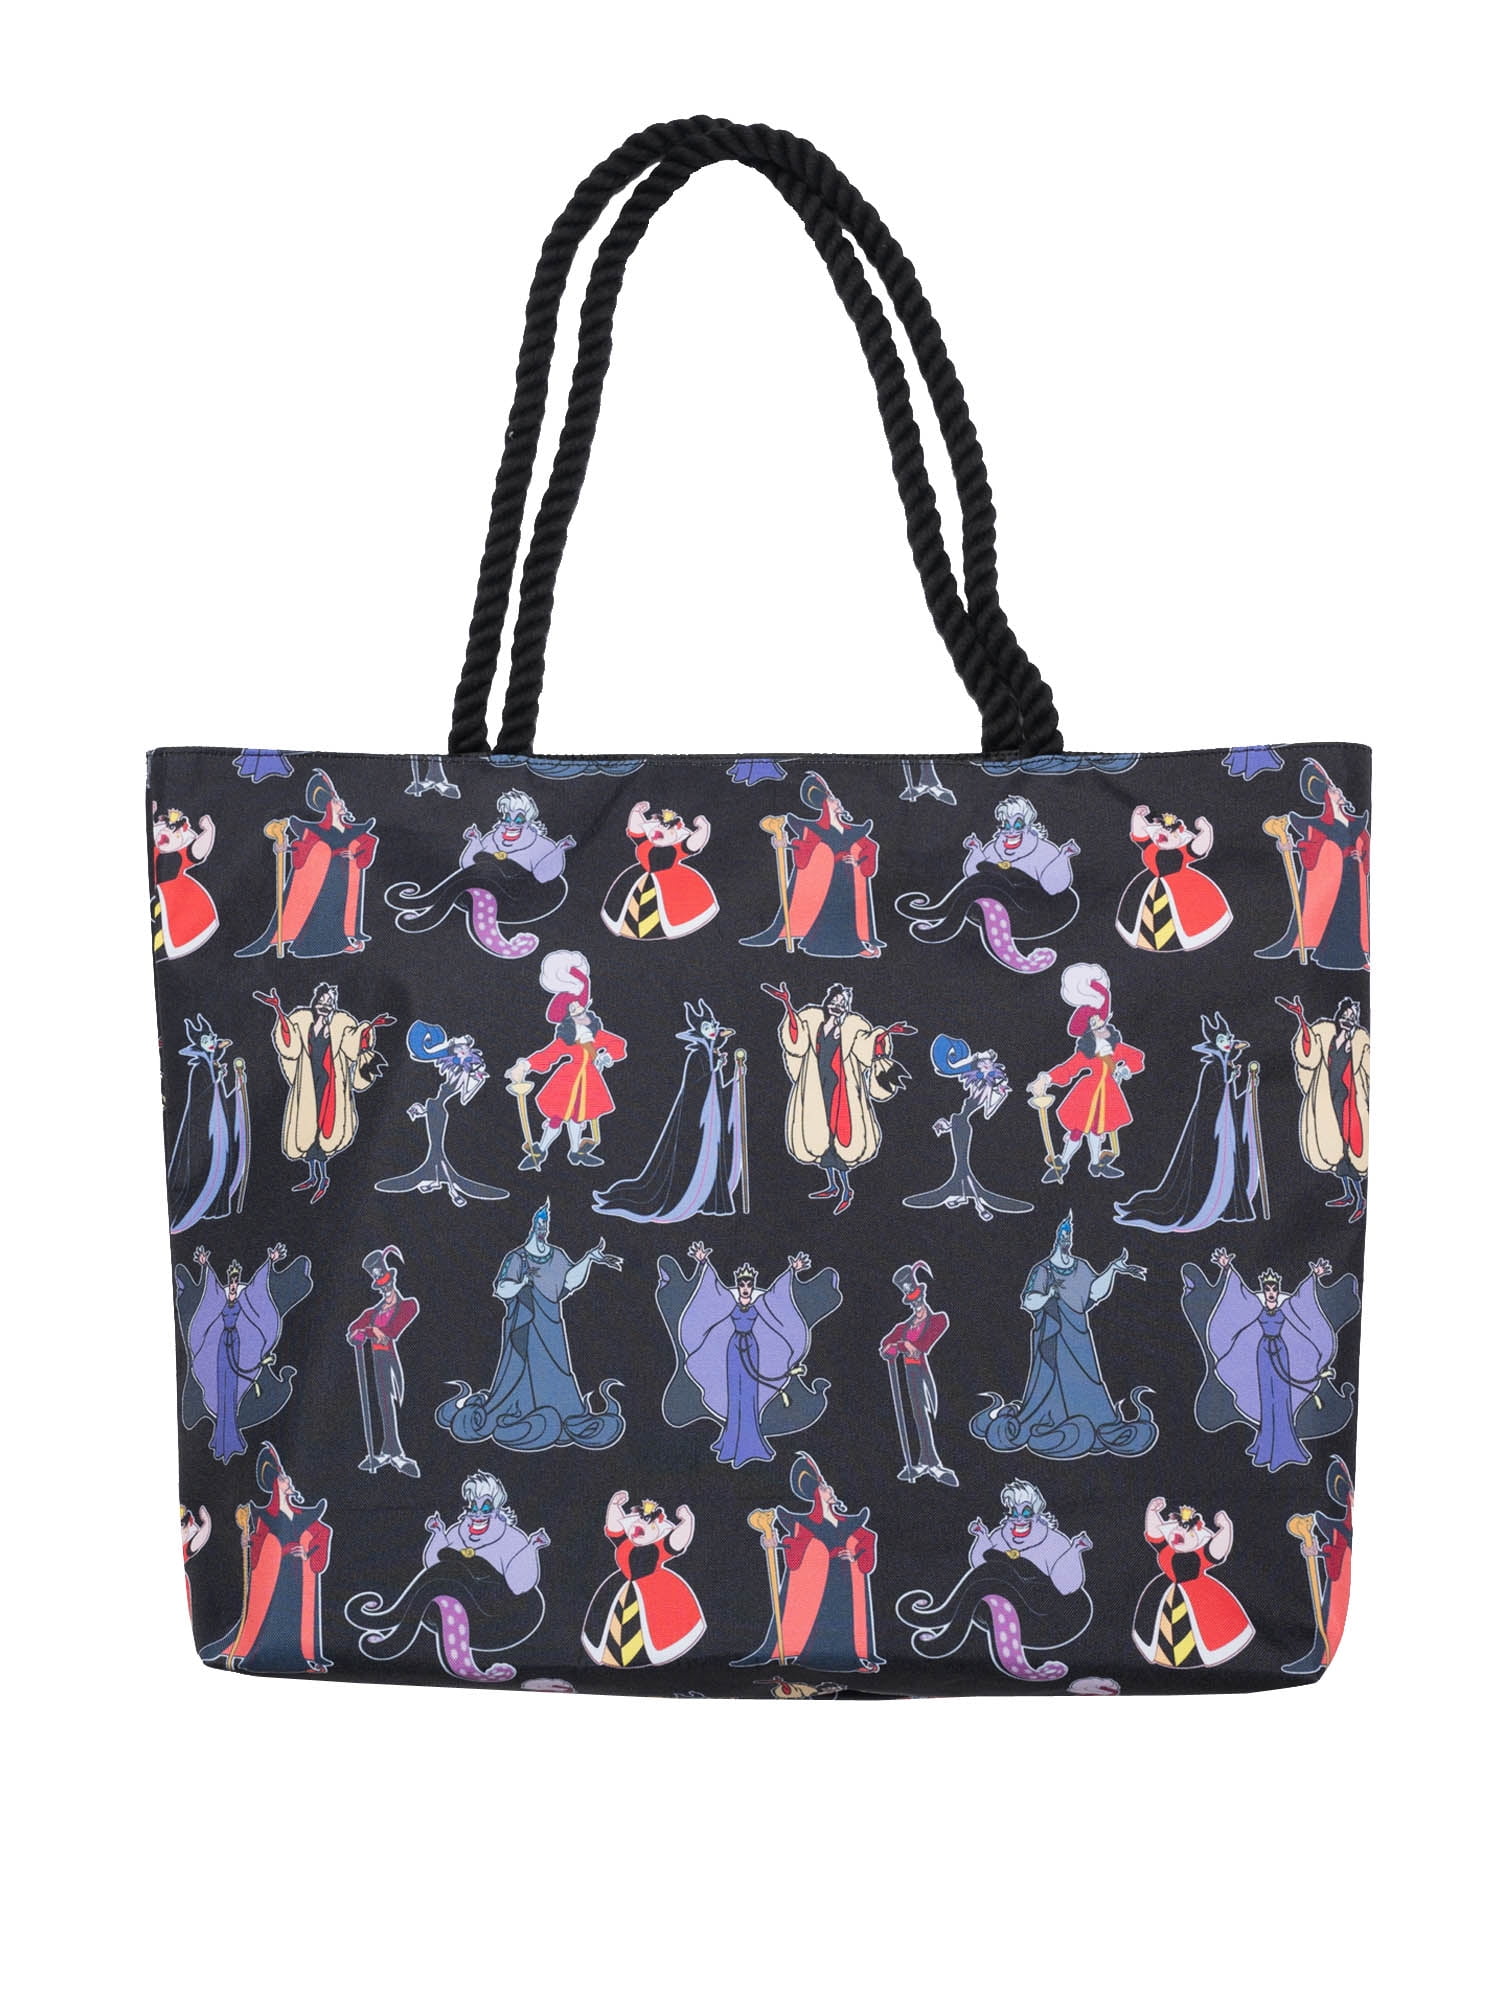 Cooper girl Cat Paws Tote Bag Top Handle Handbag Shoulder Bag Large Capacity